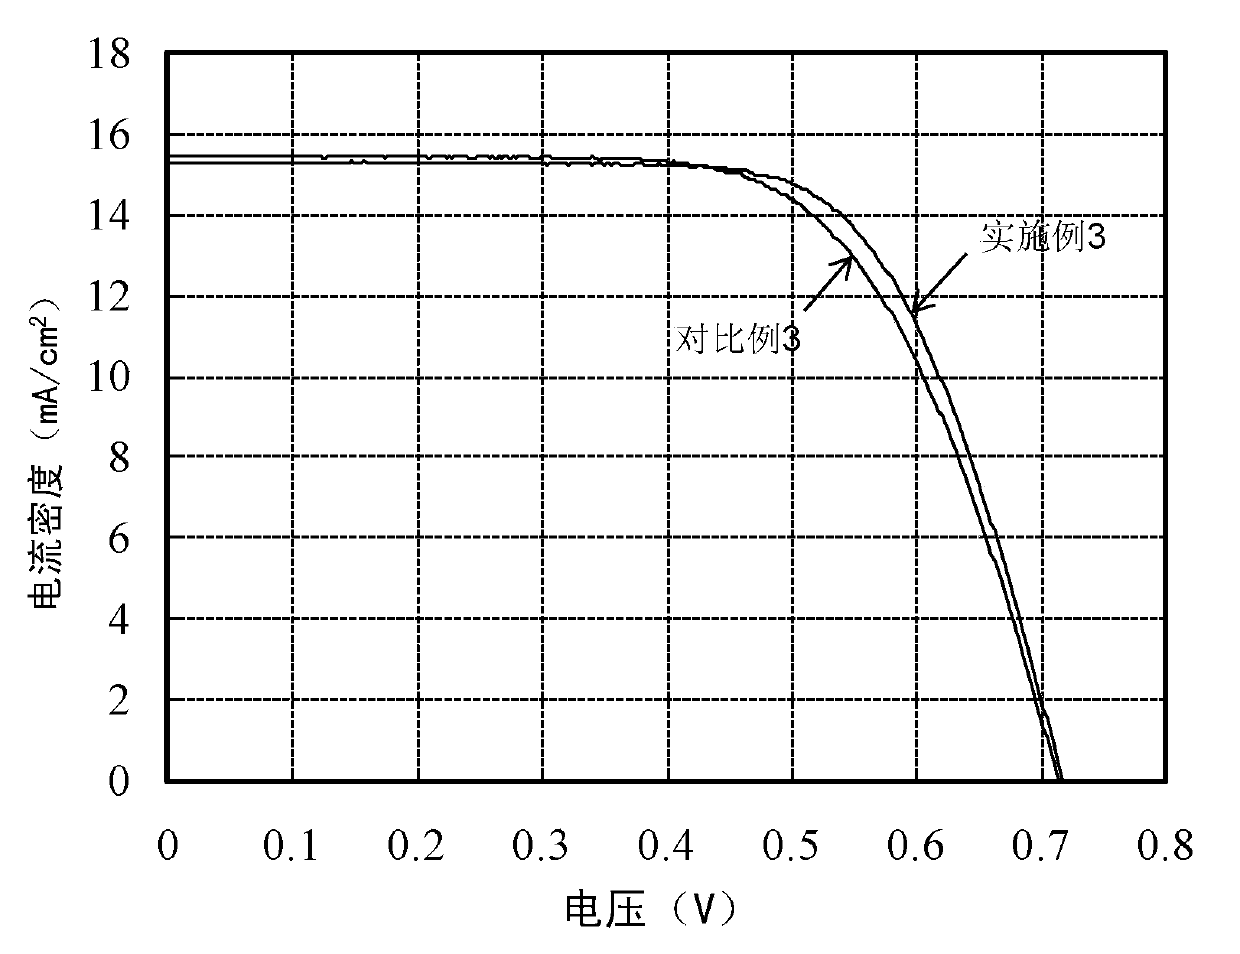 Method for preparing titanium dioxide photo-anode of DSSC (Dye-Sensitized Solar Cell)